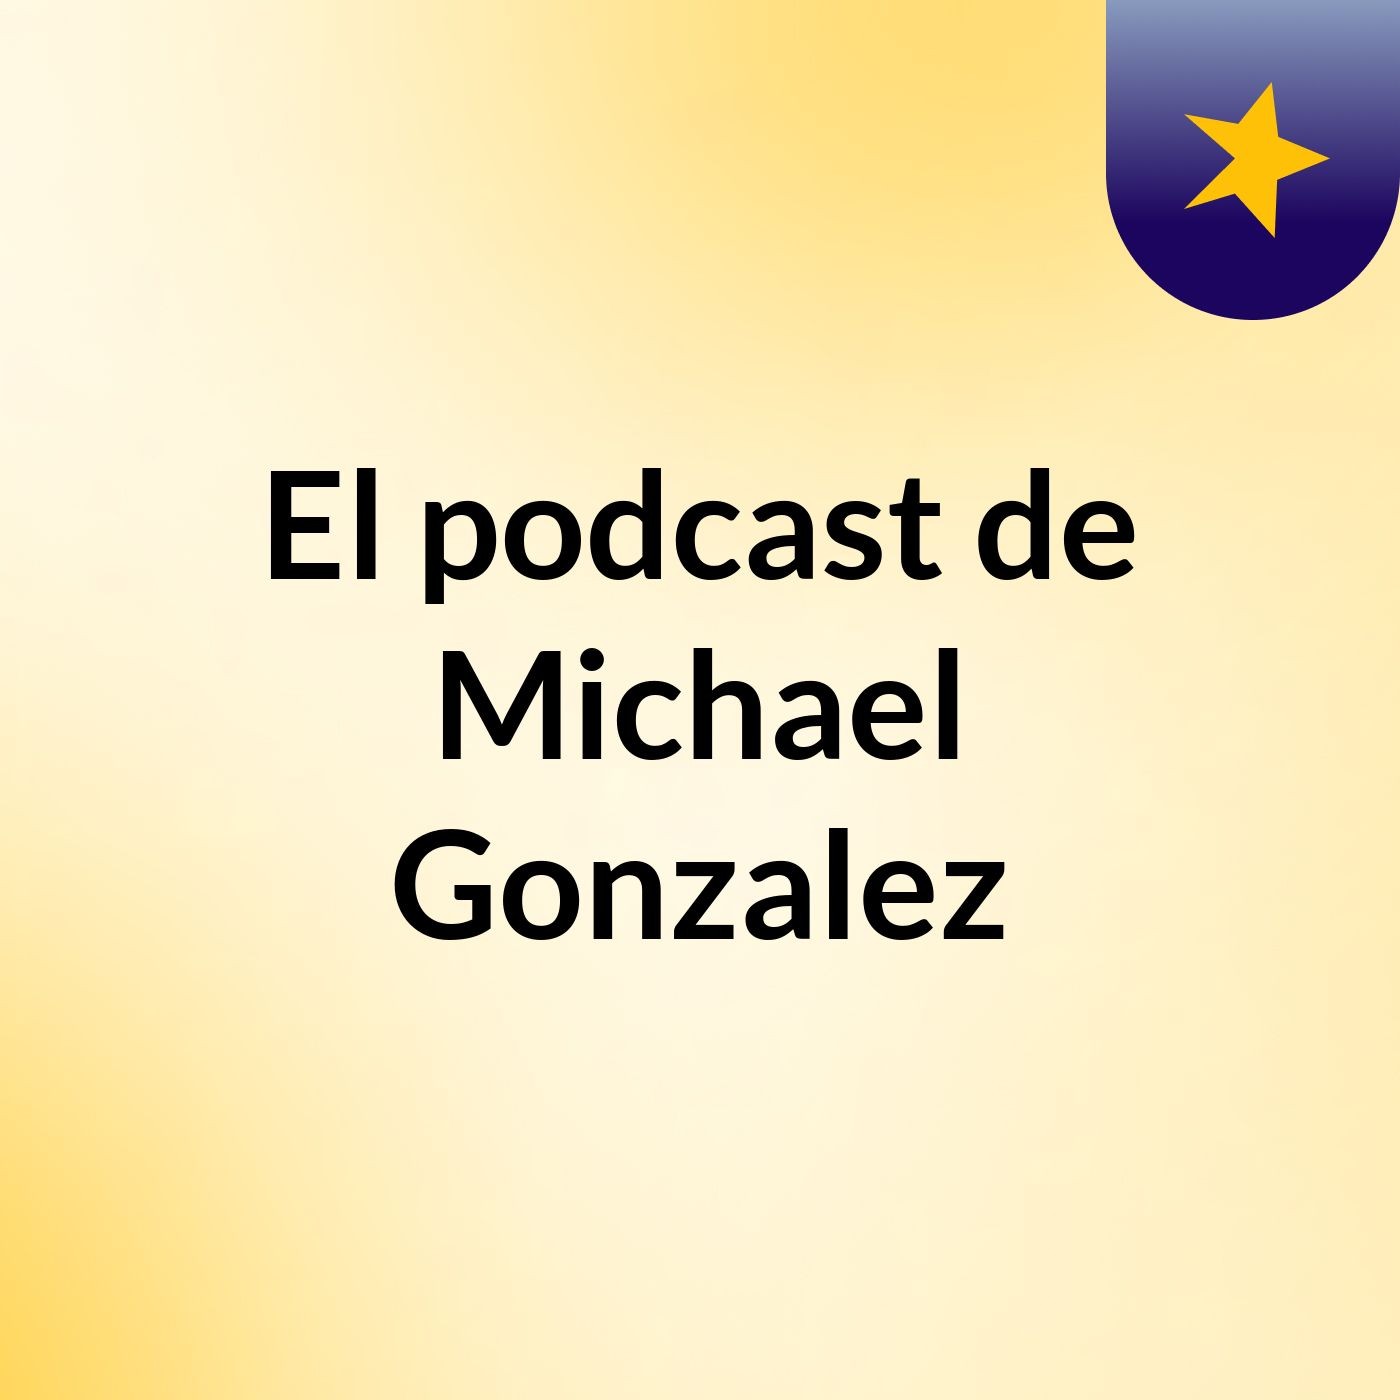 Episodio 5 - El podcast de Michael Gonzalez